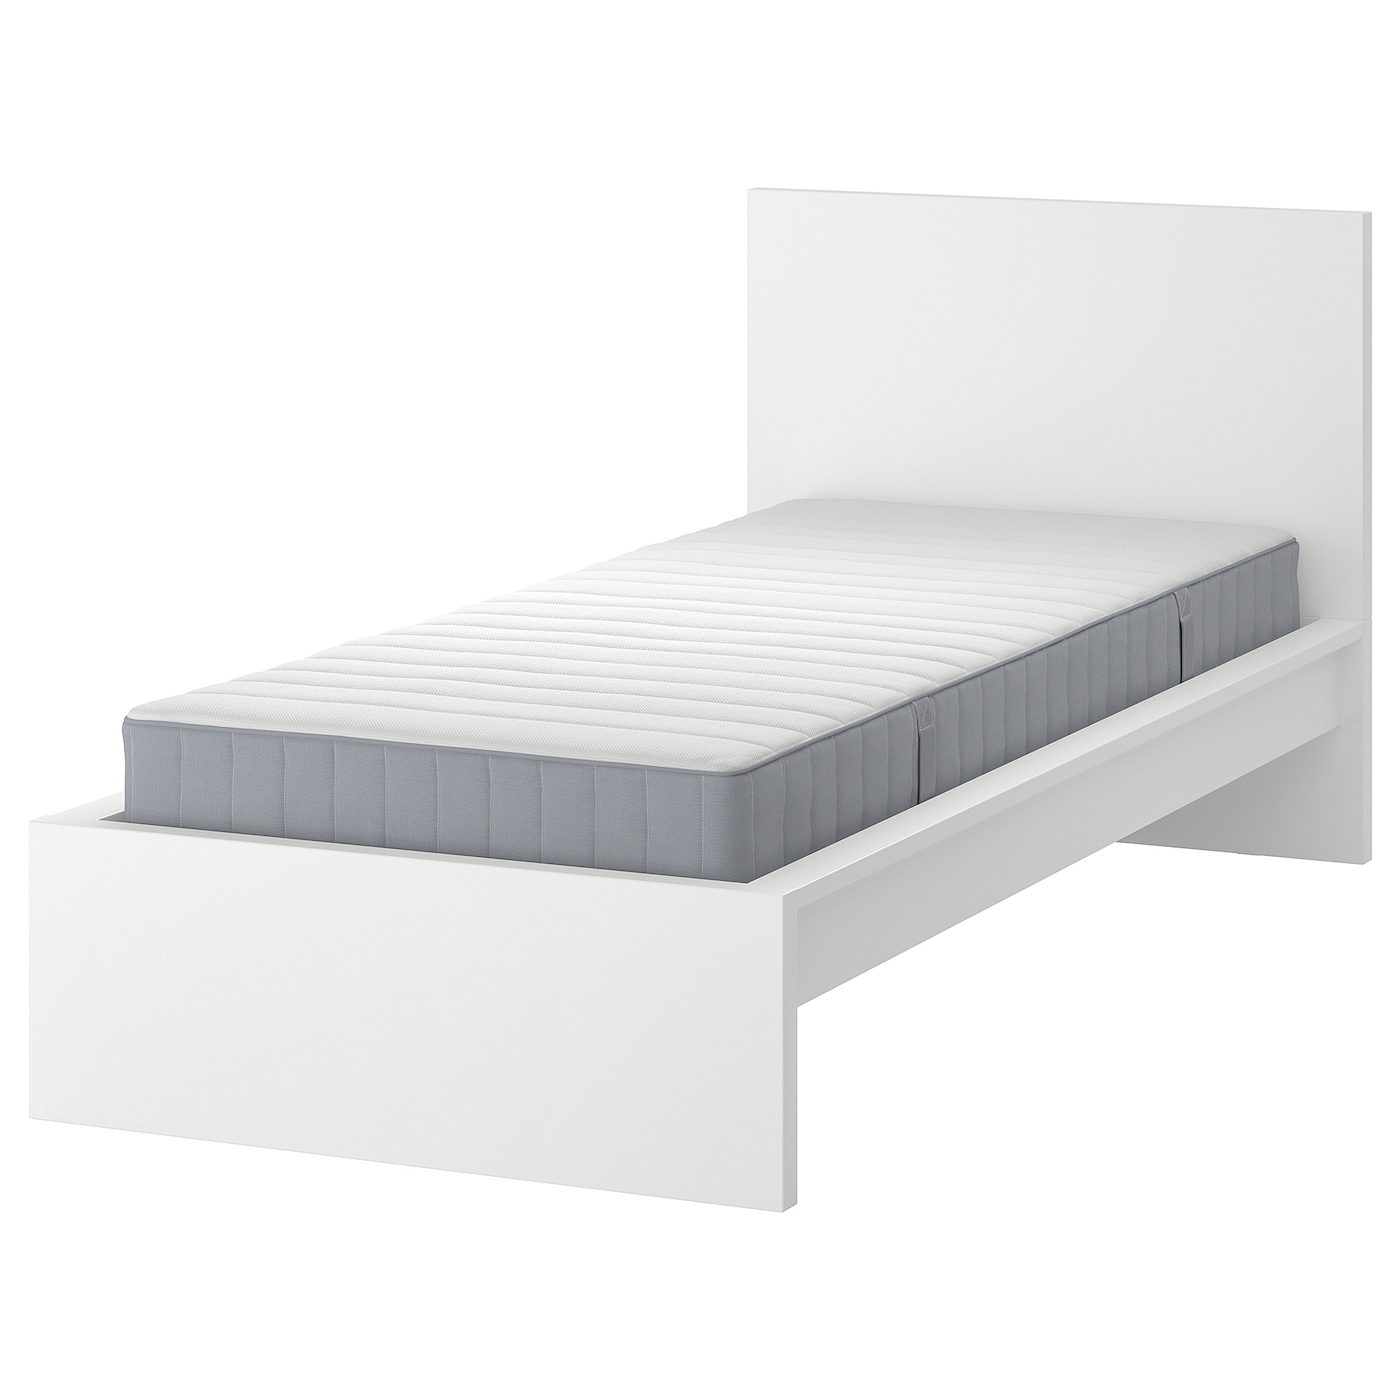 Кровать - IKEA MALM, 200х120 см, матрас жесткий, белый, МАЛЬМ ИКЕА